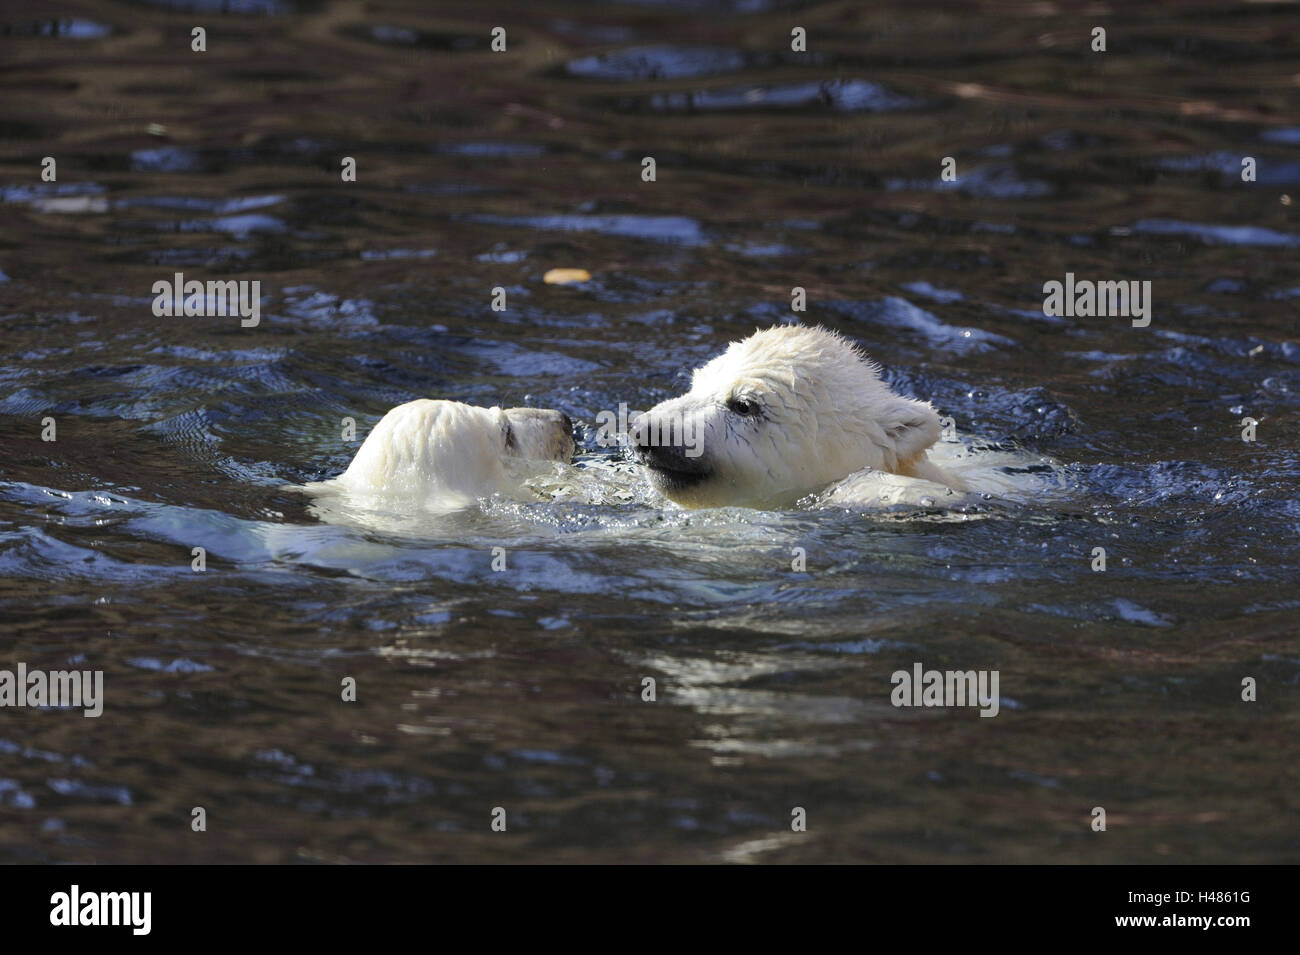 Eisbären, Ursus Maritimus, junge Tiere im Wasser, Stockfoto